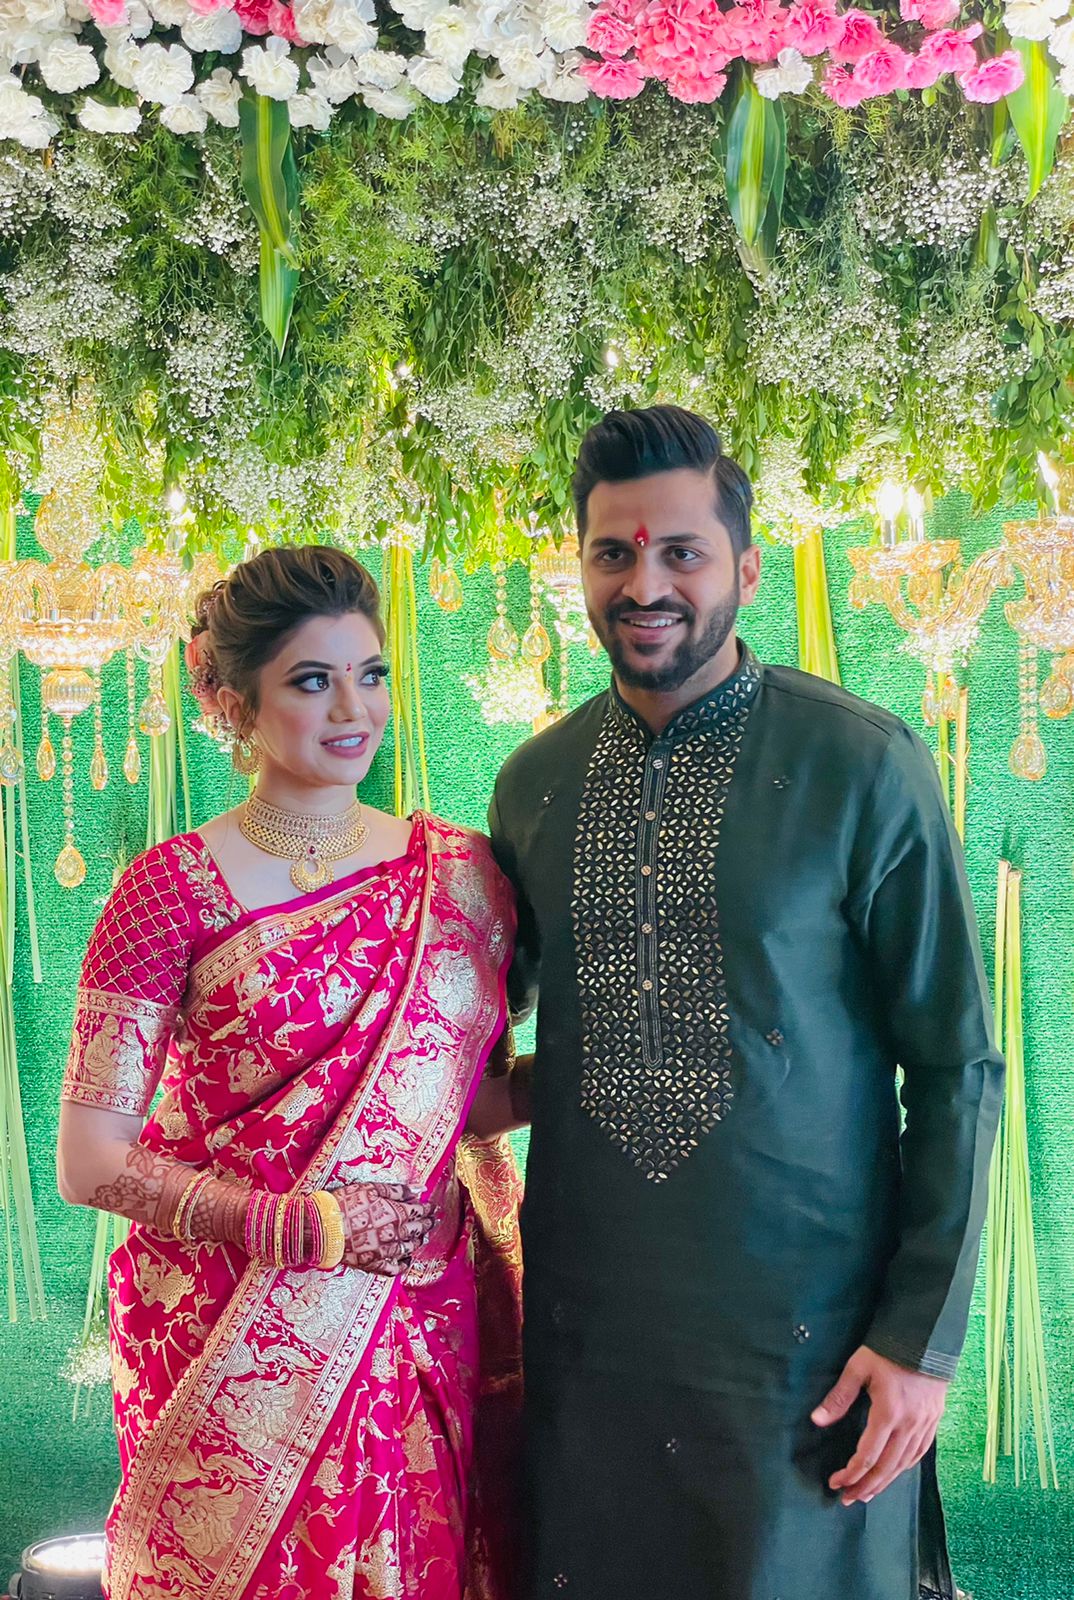 Nauvari Marathi Wedding Dress For Couples K4 Fashion, 51% OFF